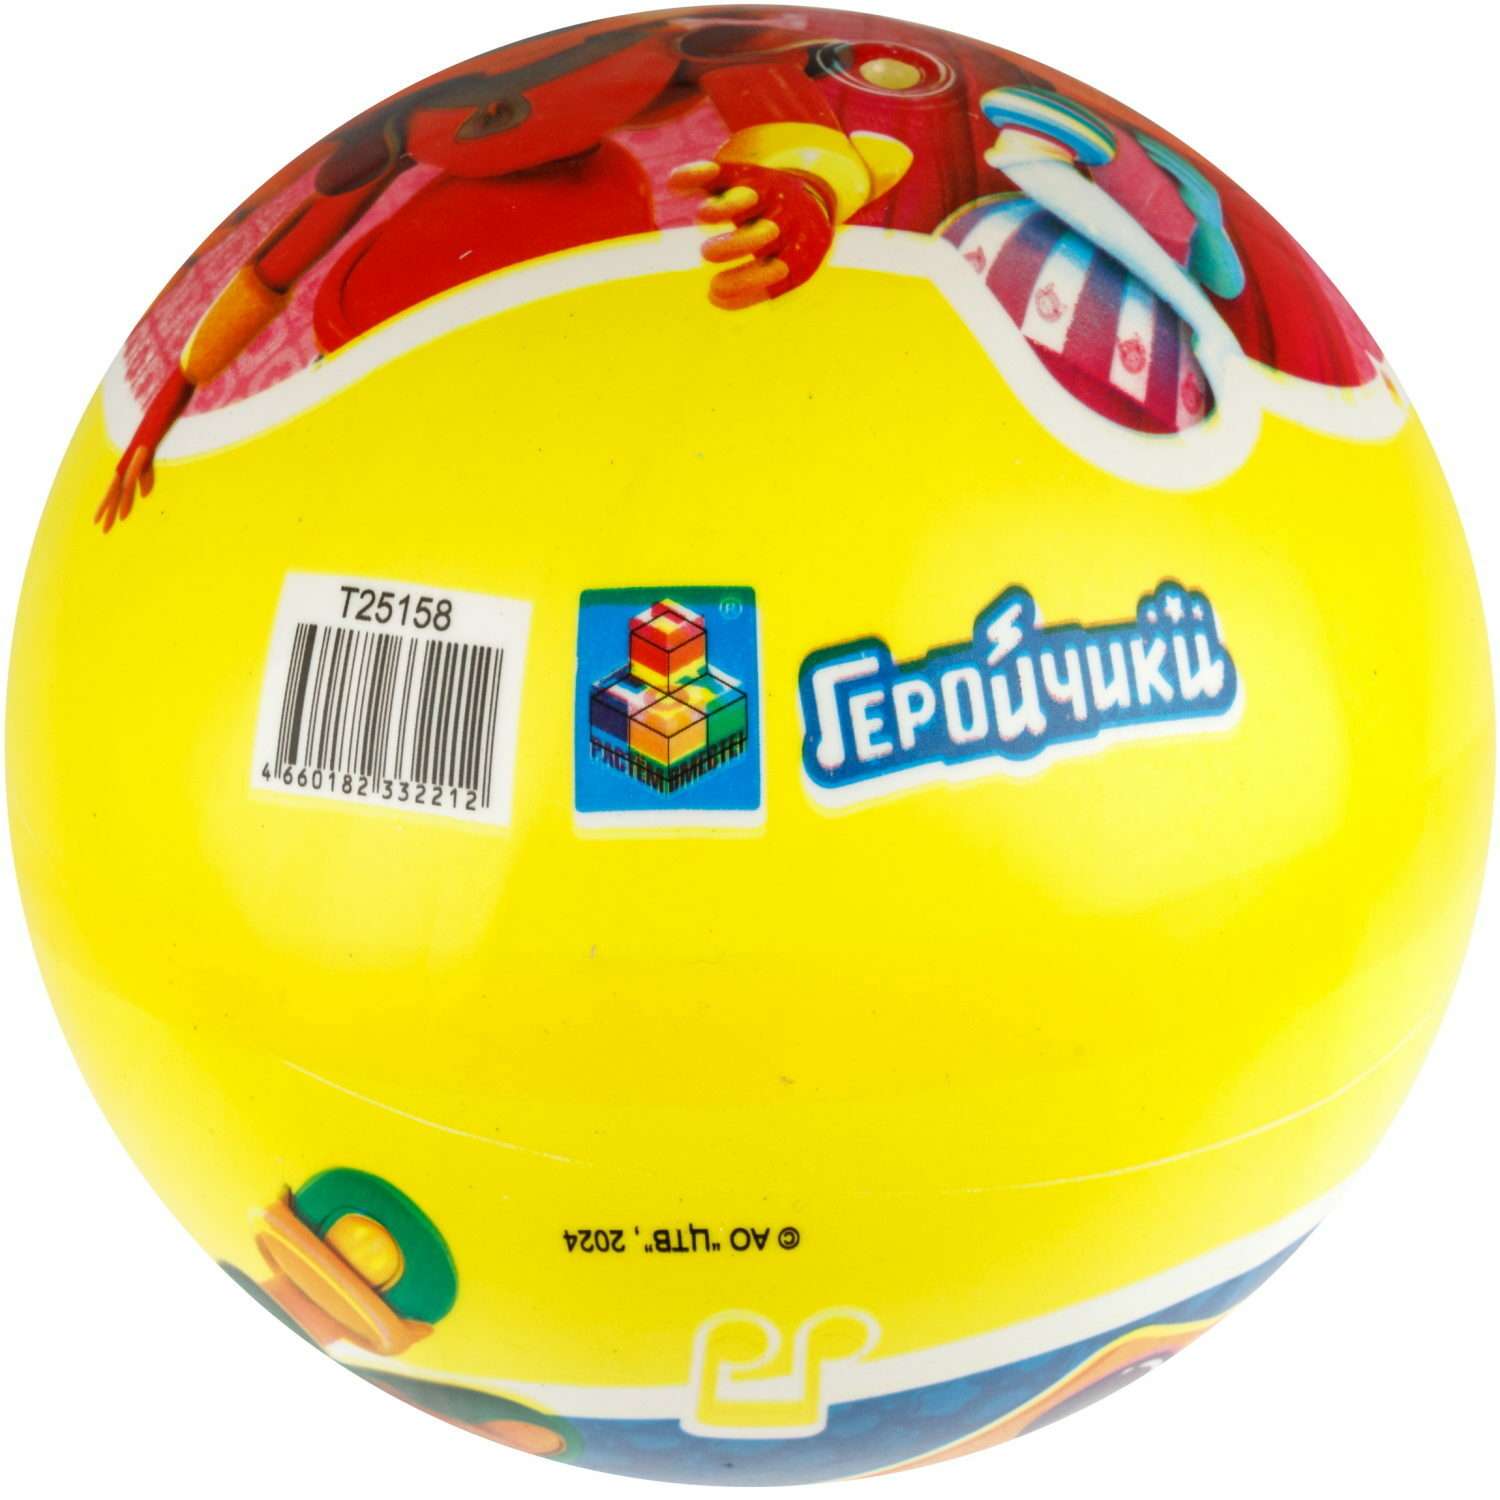 Мяч детский 23 см 1TOY Геройчики резиновый надувной игрушки для улицы желтый - фото 2